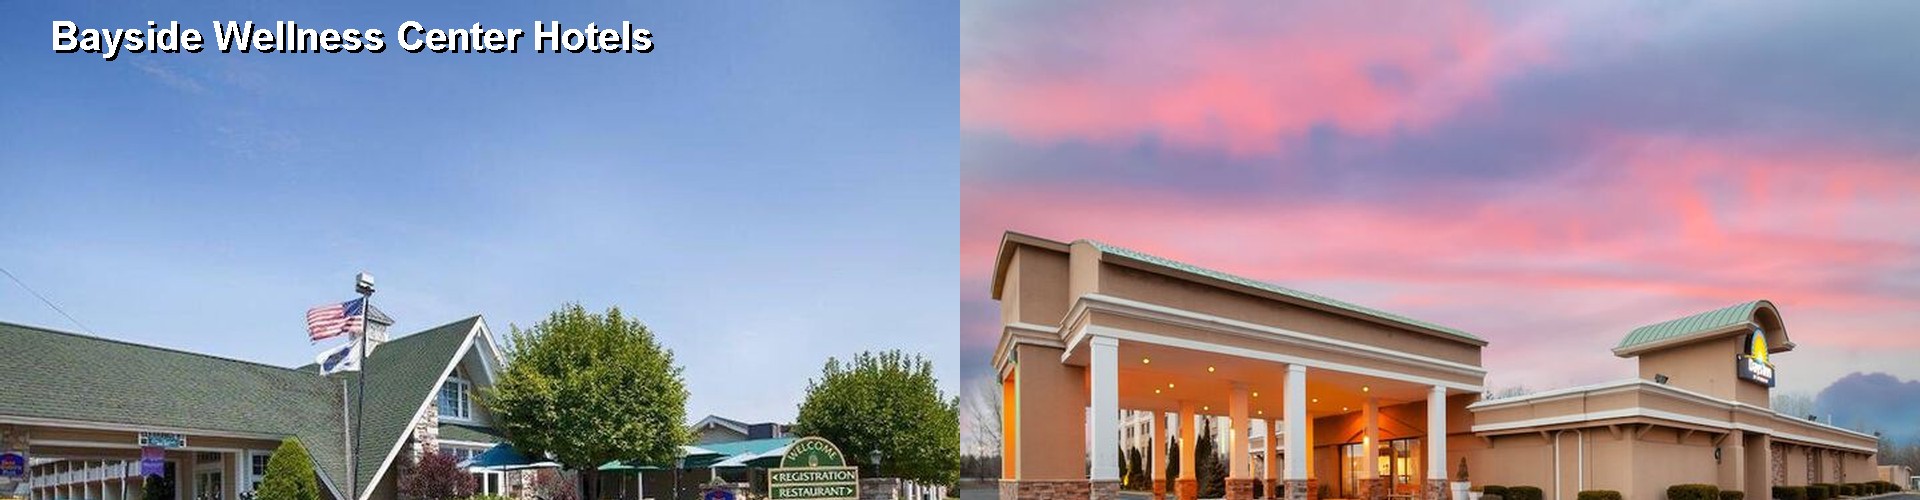 3 Best Hotels near Bayside Wellness Center